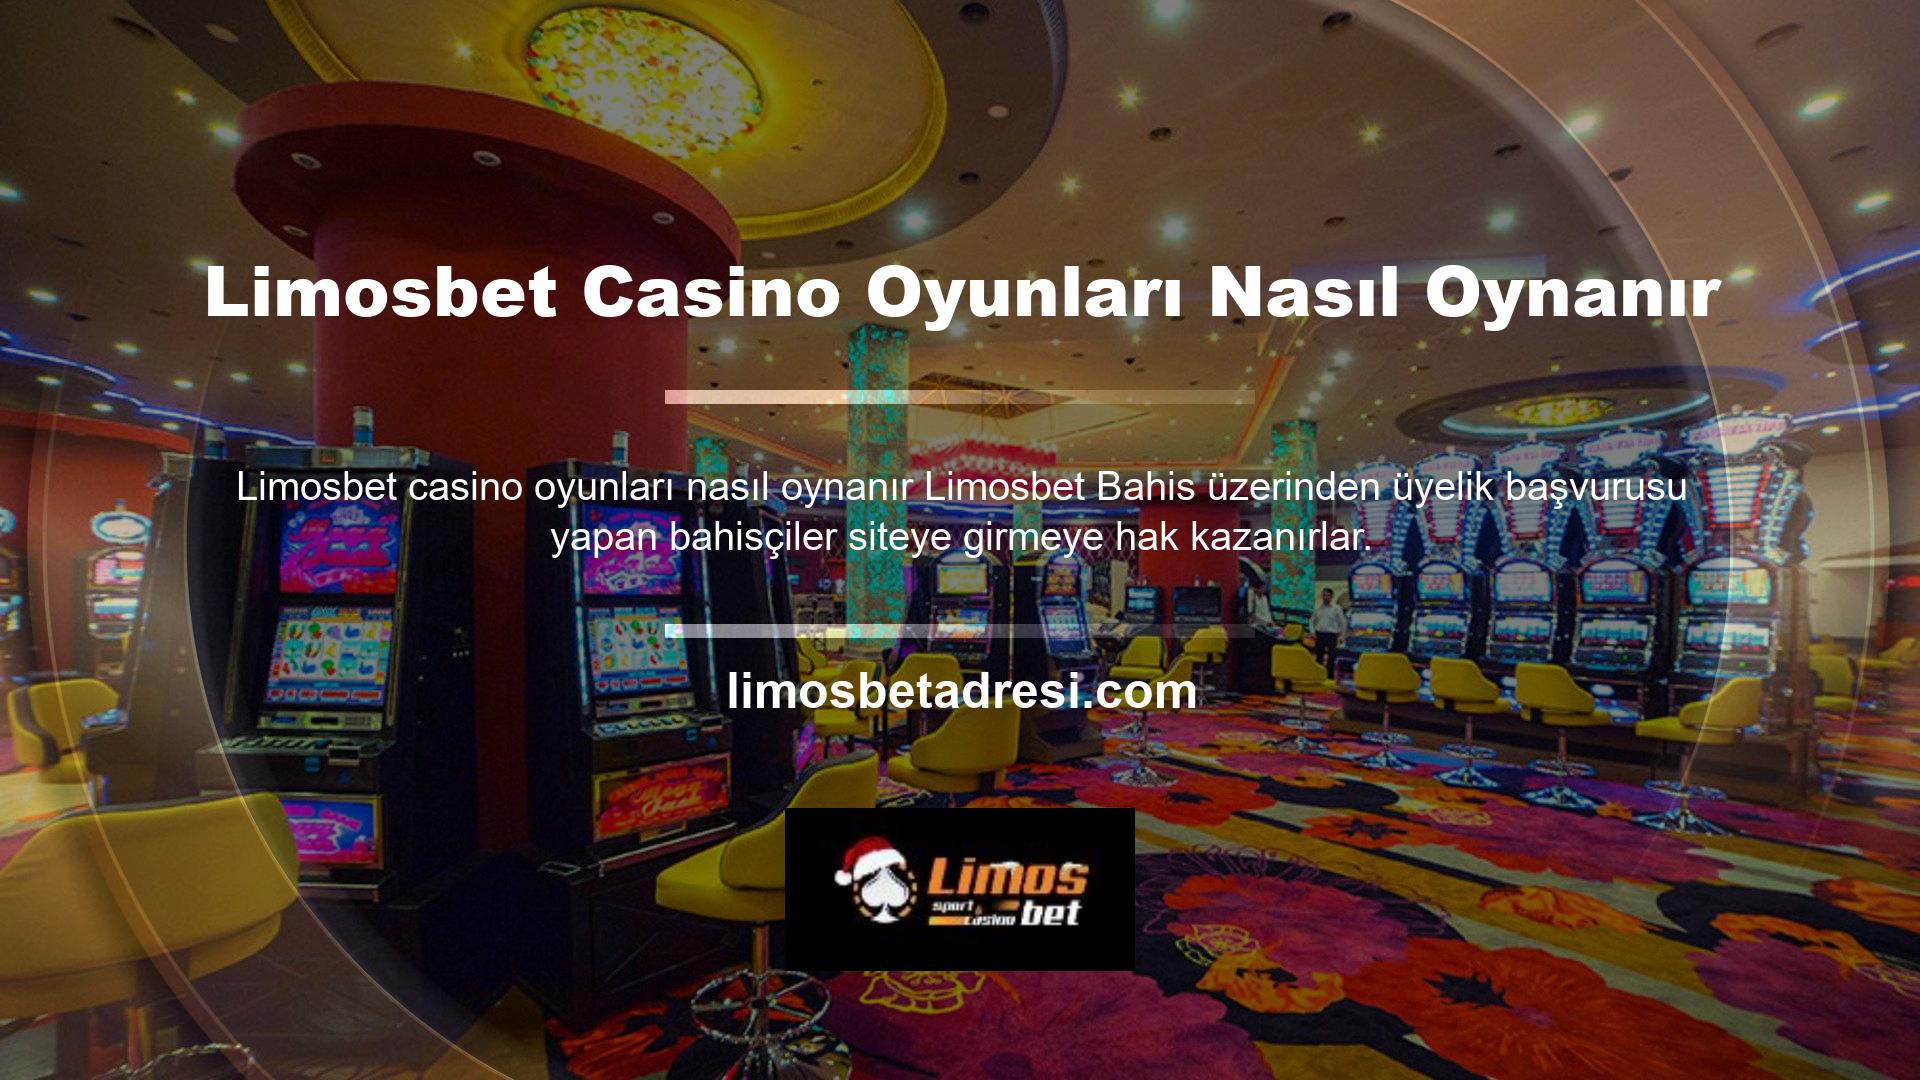 Kullanıcılar siteye giriş yaptıklarında sitenin sağ tarafında yer alan casino bölümüne yönlendirilmektedir